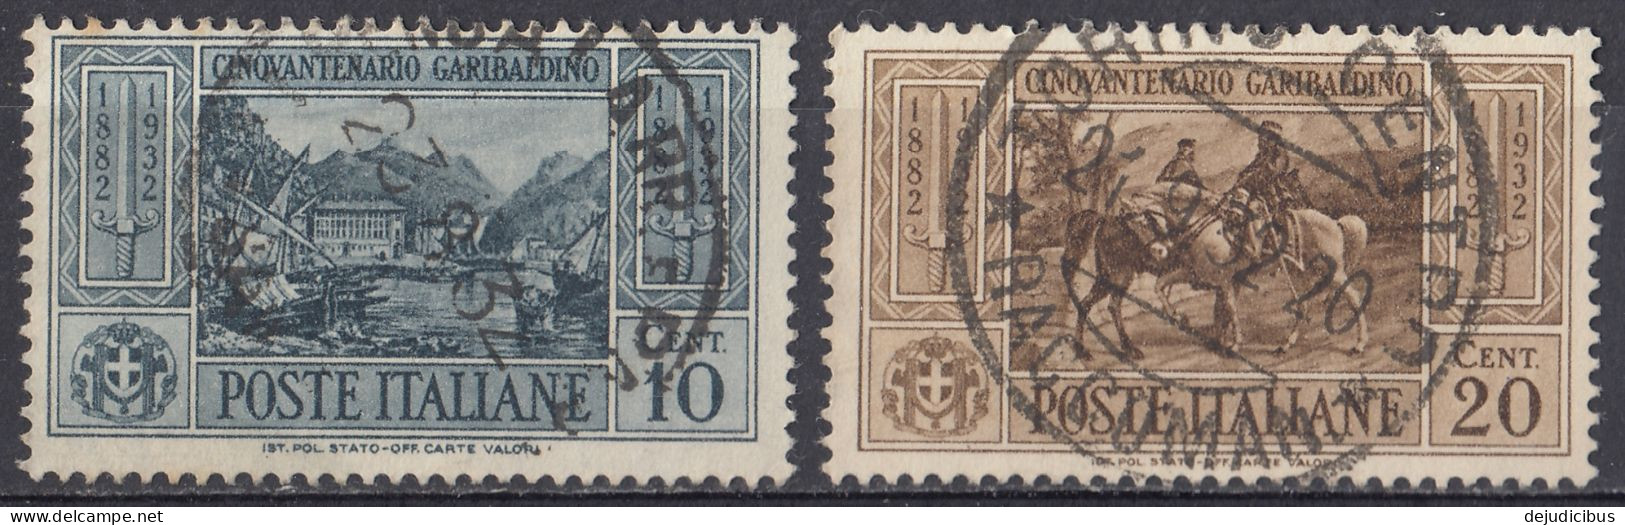 ITALIA - 1932 - Lotto Di 2 Valori Usati:  Yvert 295 E 296. - Pacchi Postali